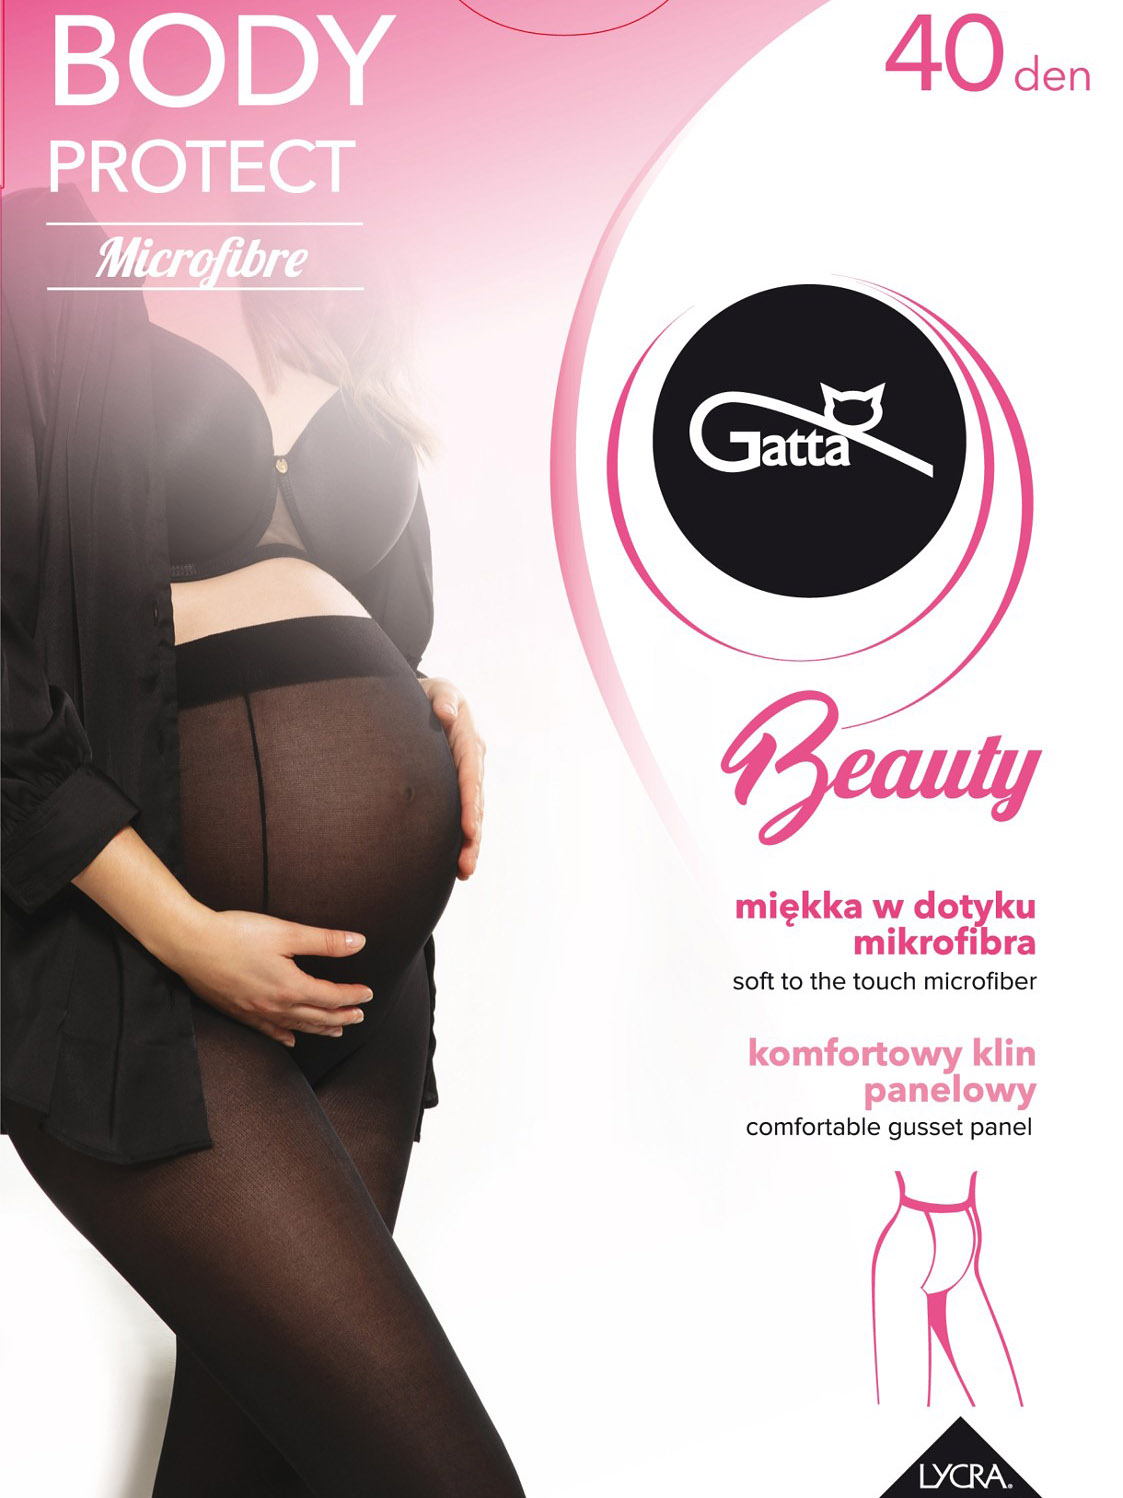 Класичні матові колготи для вагітних жінок Gatta Body Protect 40 den